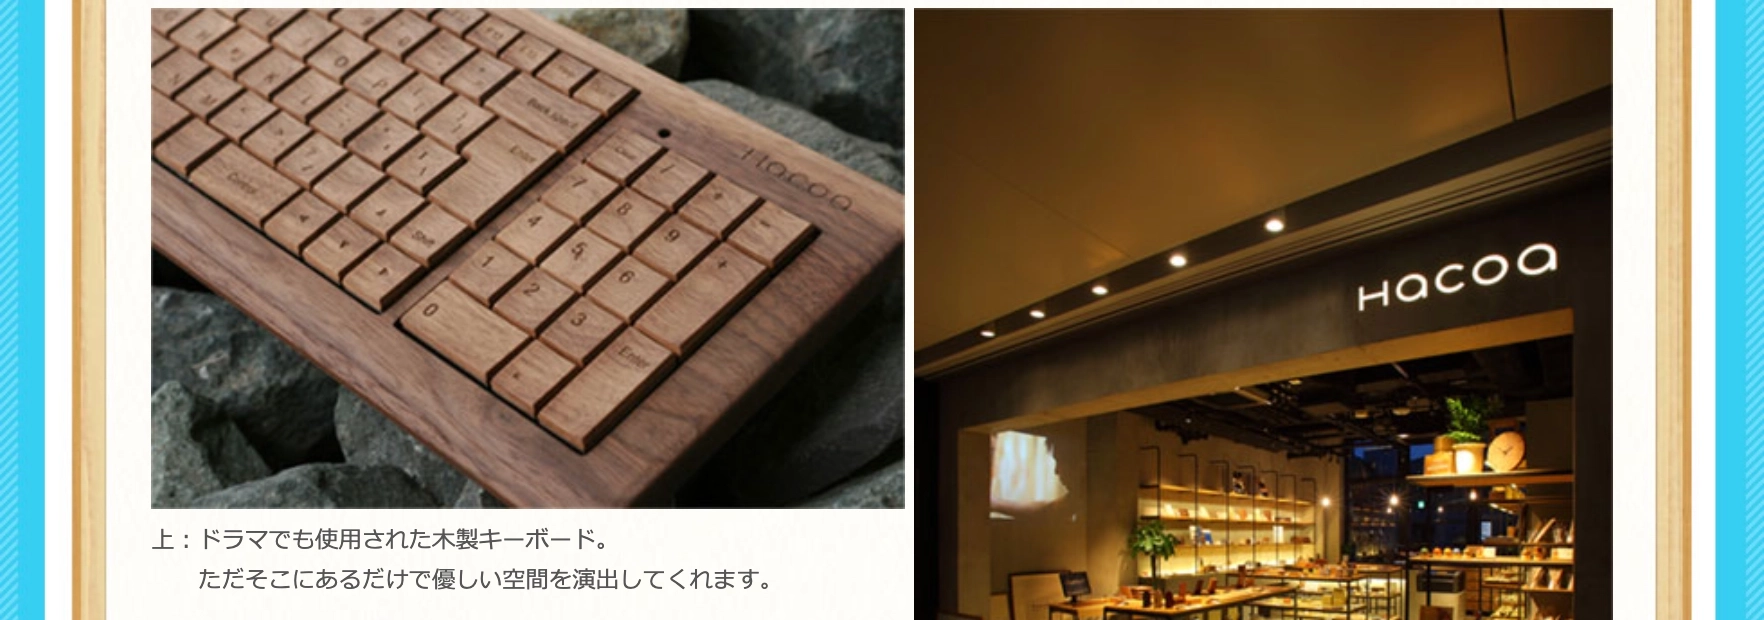 ドラマで使用された木製のキーボードの画像